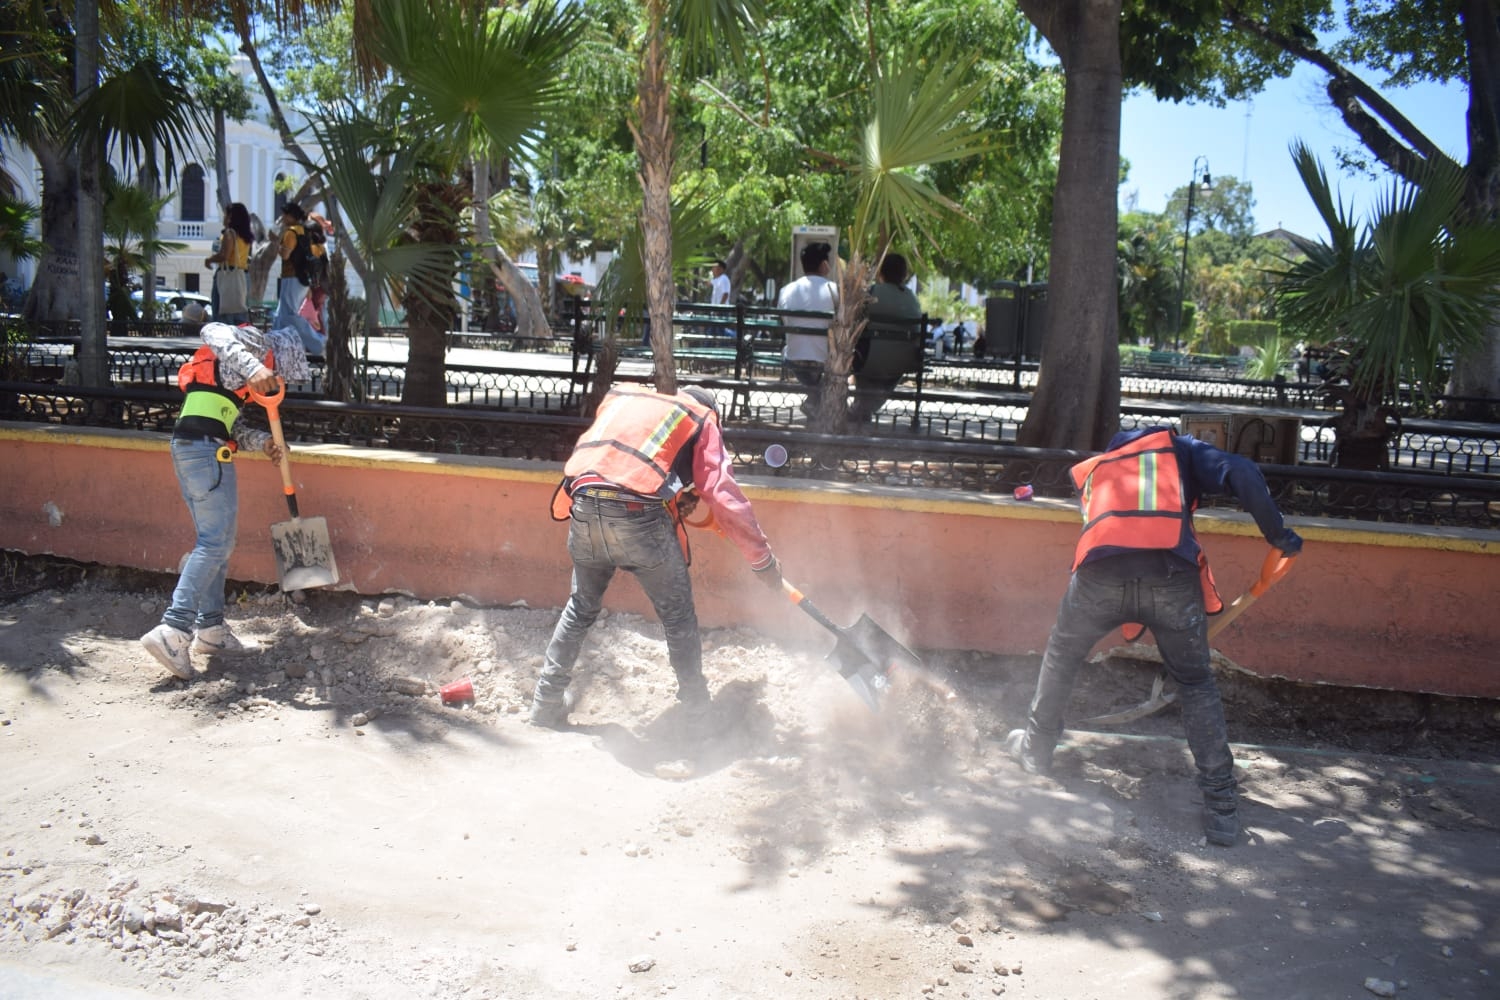 La Plaza Grande de Mérida se encuentra en remodelación, por lo que permanece cerrado el acceso